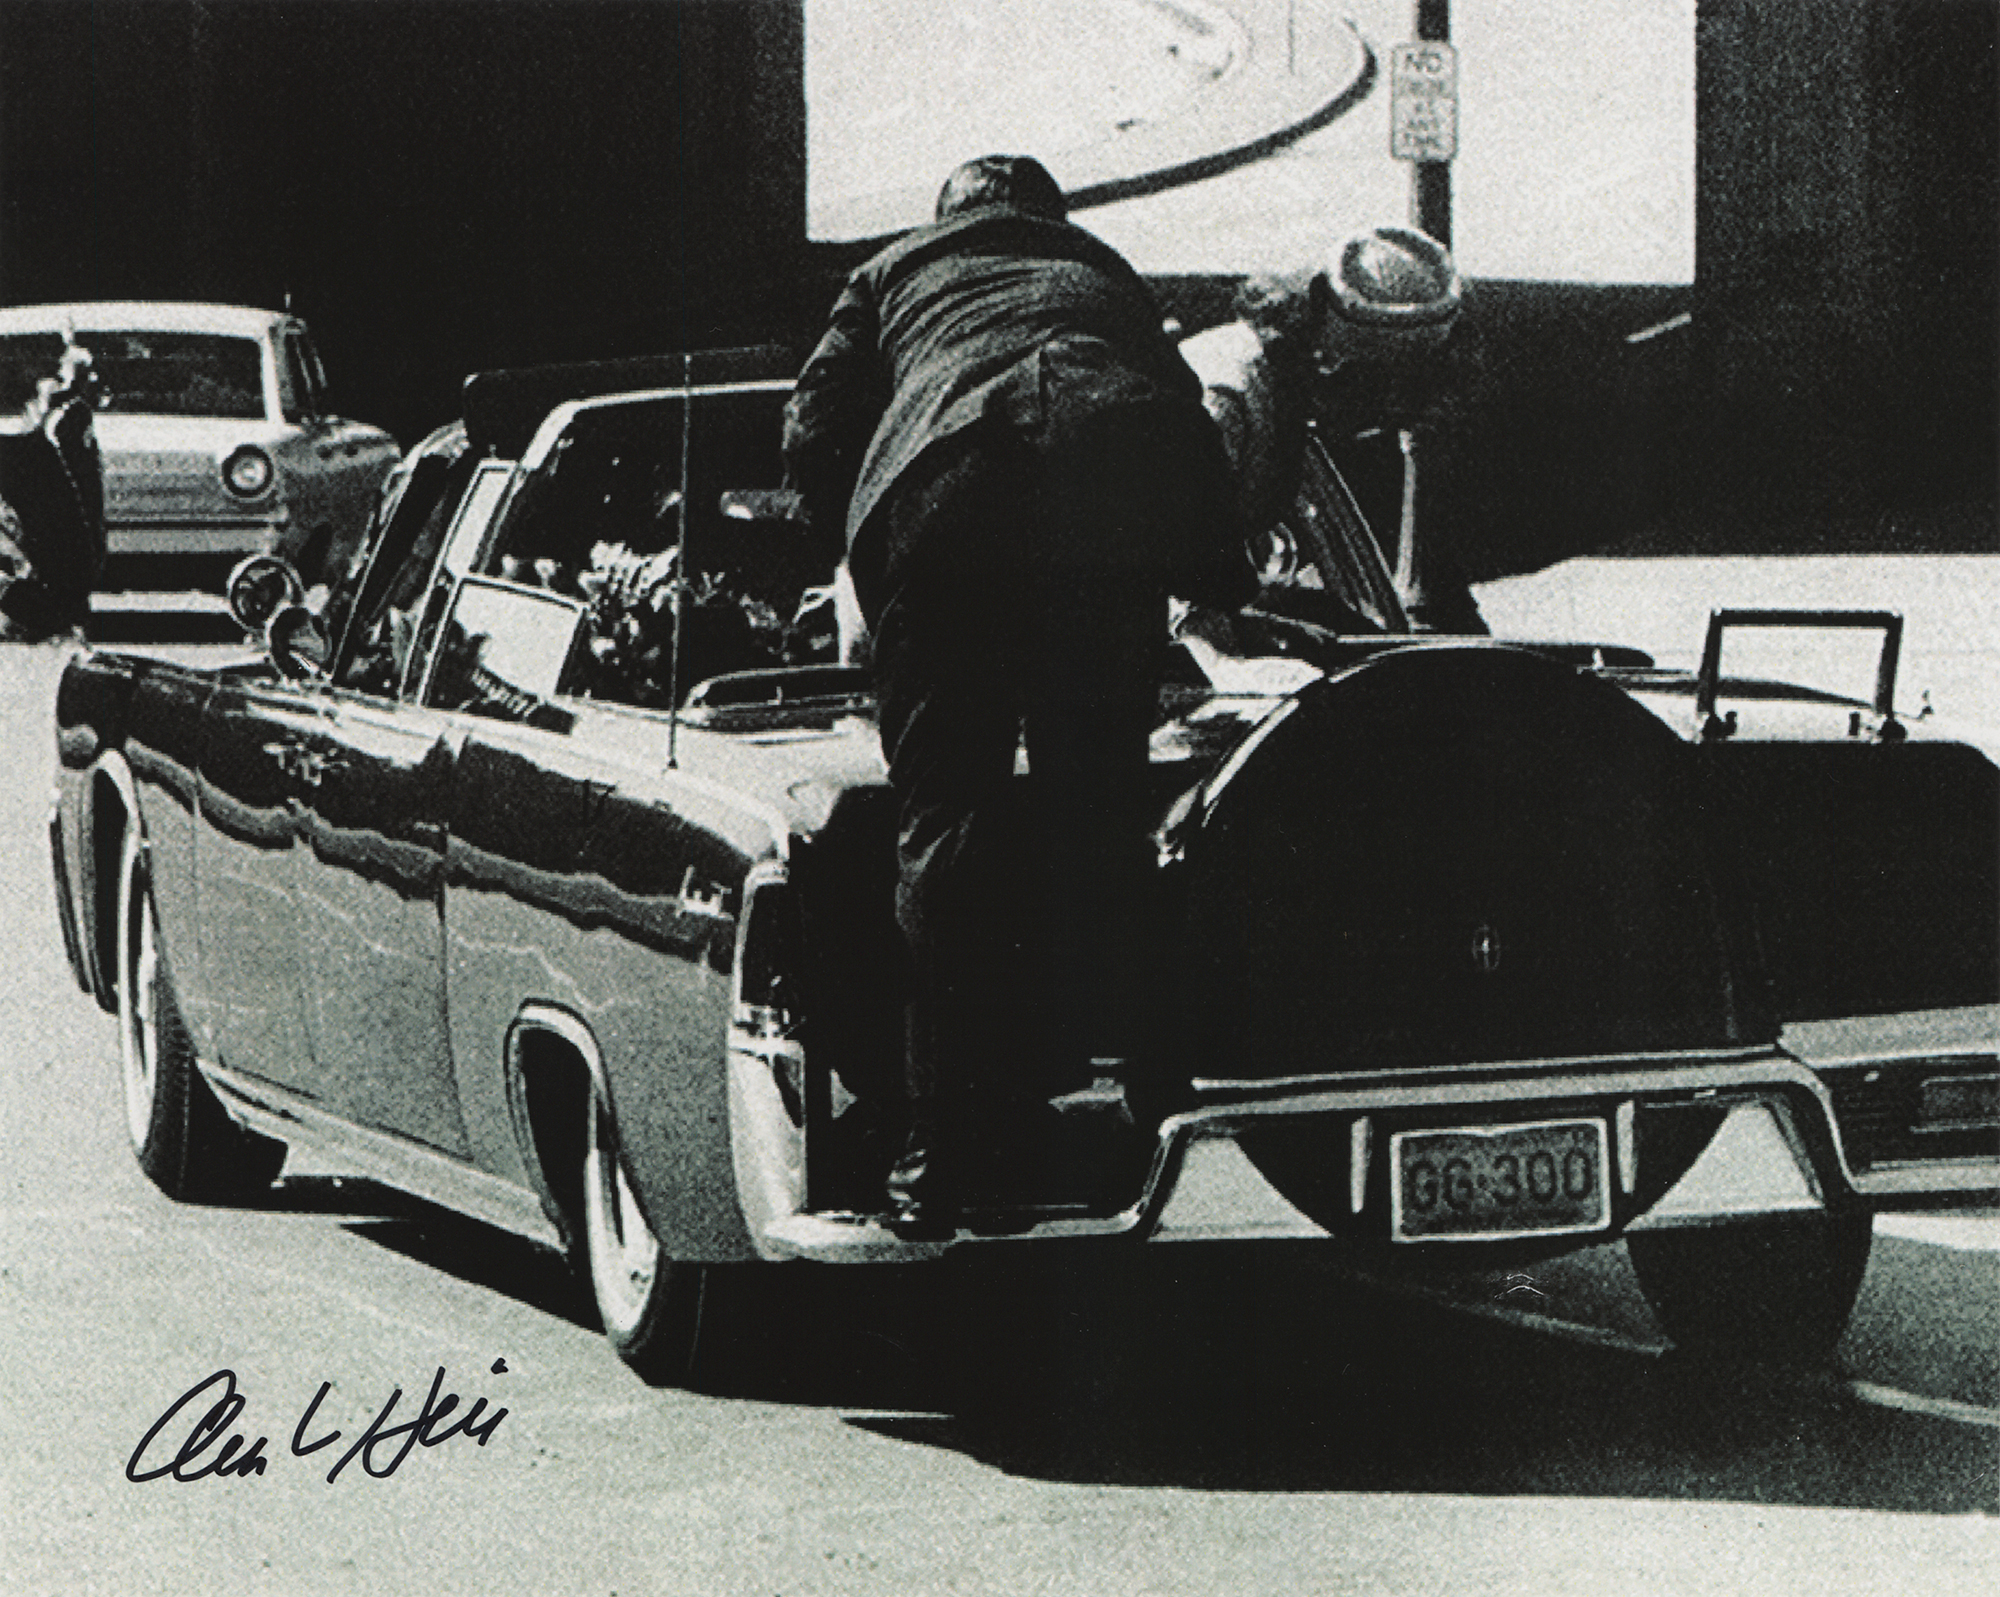 Lot #254 Kennedy Assassination: Clint Hill